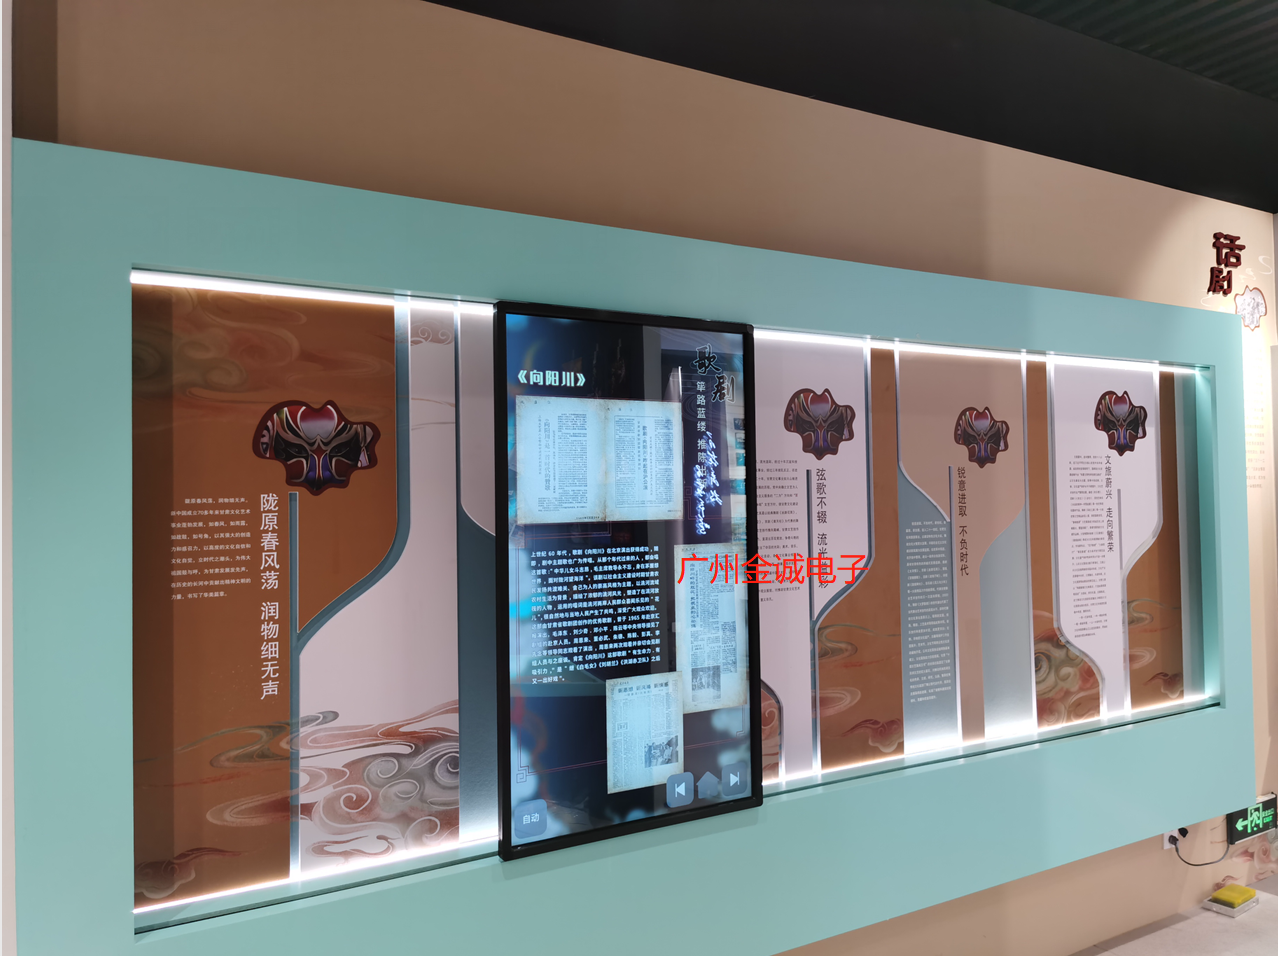 甘肃兰州，文化展厅互动滑轨屏。智能互动滑轨屏多媒体触摸感应一体机电动触摸滑轨屏互动滑轨电视